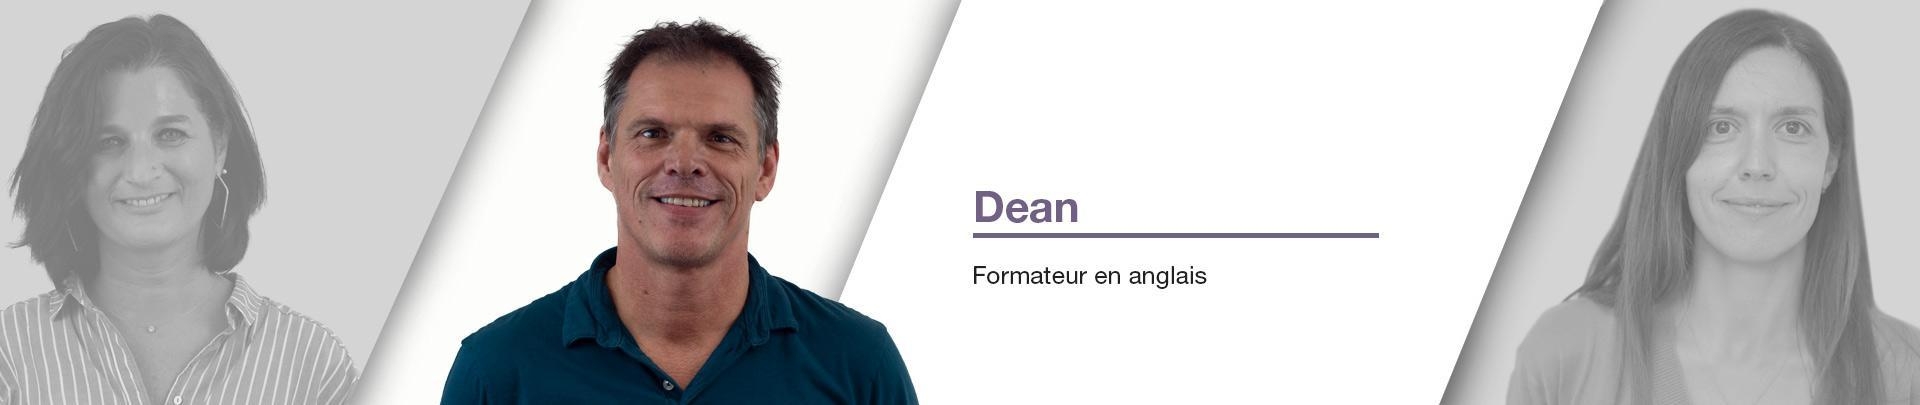 Dean - Formateur en anglais pour metaform depuis 2002